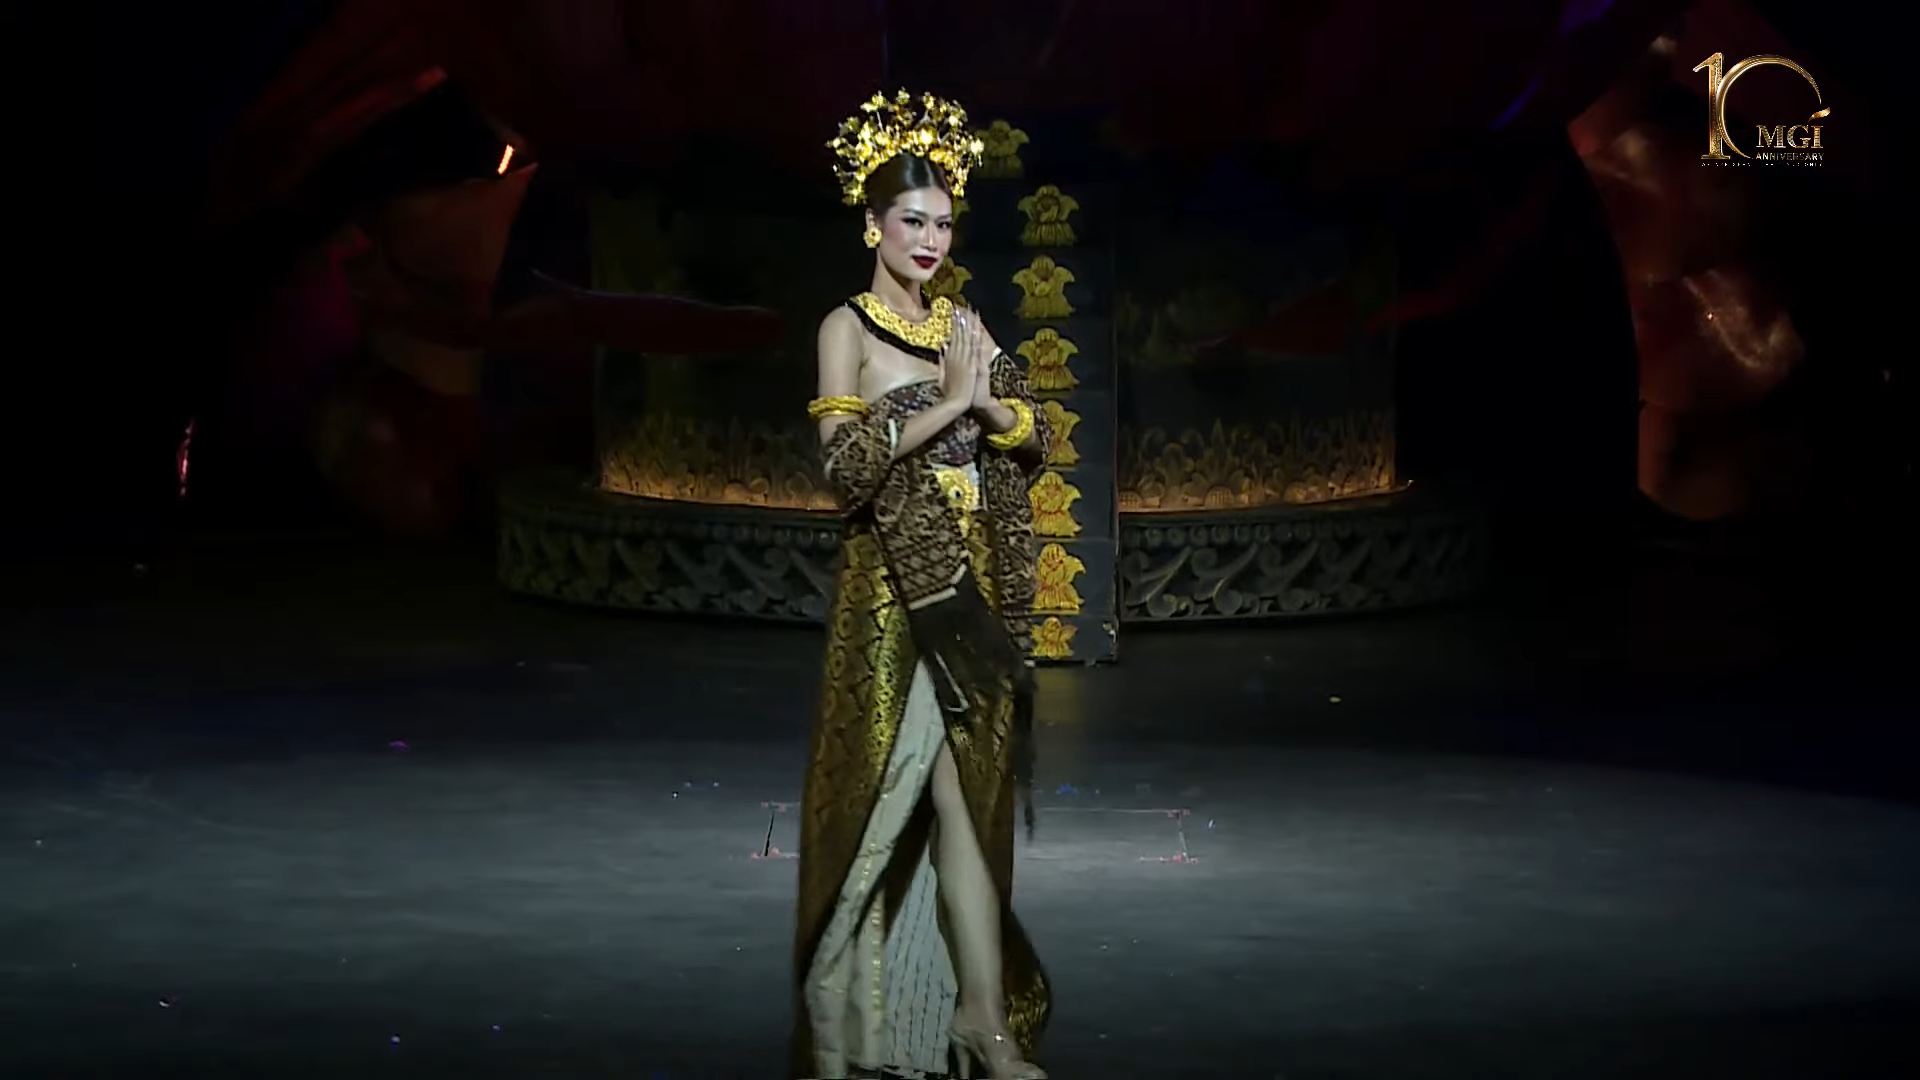 Giống với những tiết lộ trước đó, Đoàn Thiên Ân một lần nữa tái hiện lại các động tác mà cô đã trình diễn trong phần thi Trang phục văn hóa dân tộc tại Việt Nam nhưng thay vào đó, nàng hậu thể hiện điệu múa đó trong trang phục truyền thống của Bali. Ảnh: NVCC.